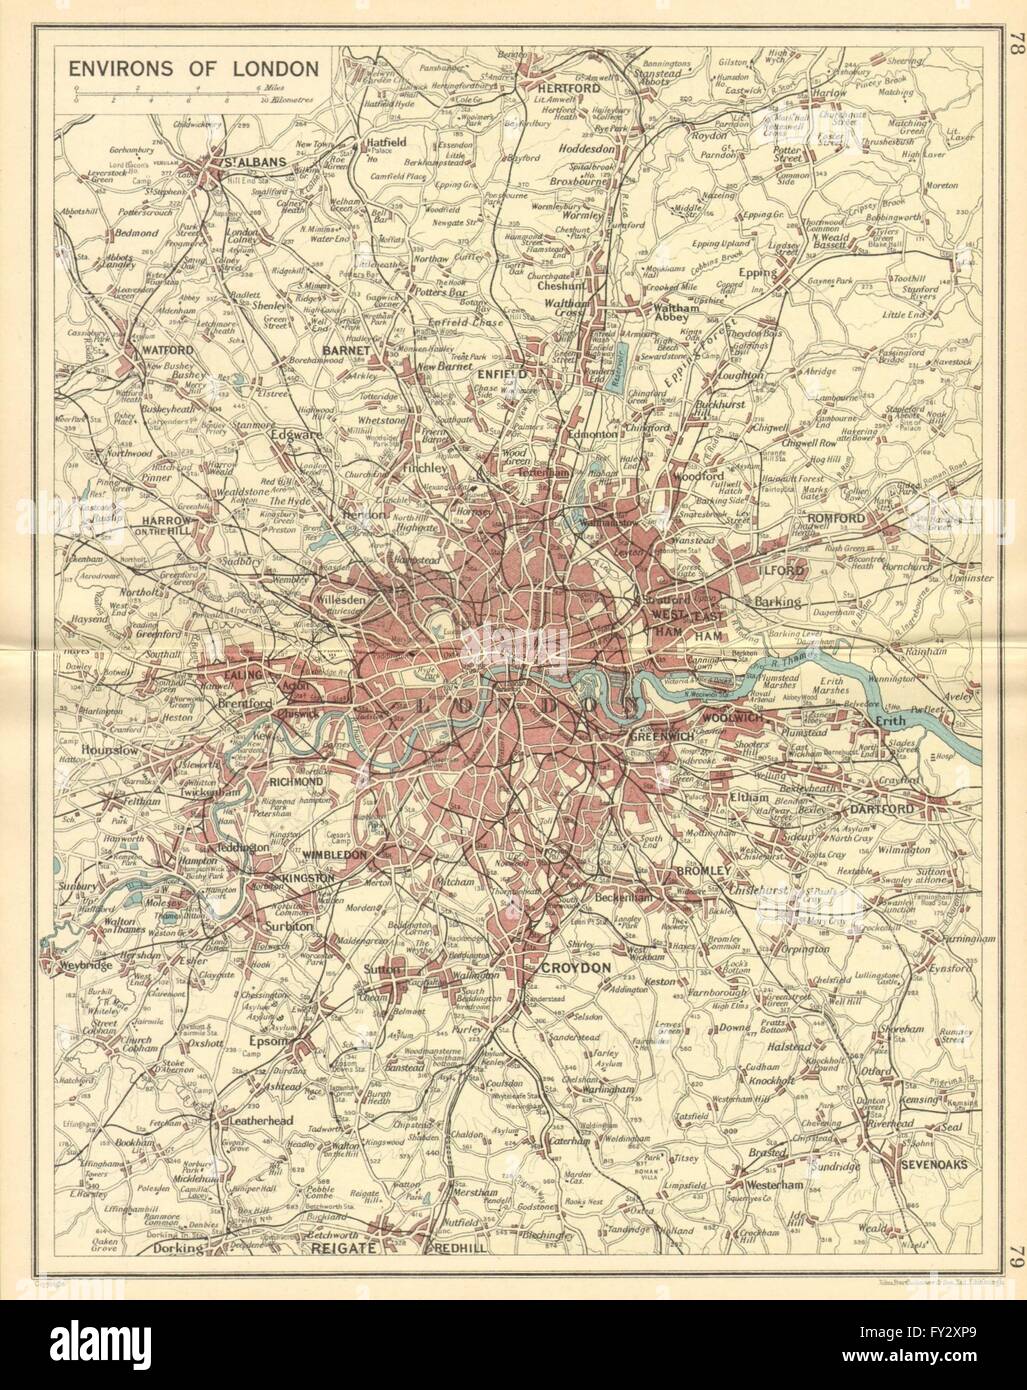 Londres y condados: ferrocarriles y carreteras. Bartolomé, 1930 vintage mapa Foto de stock